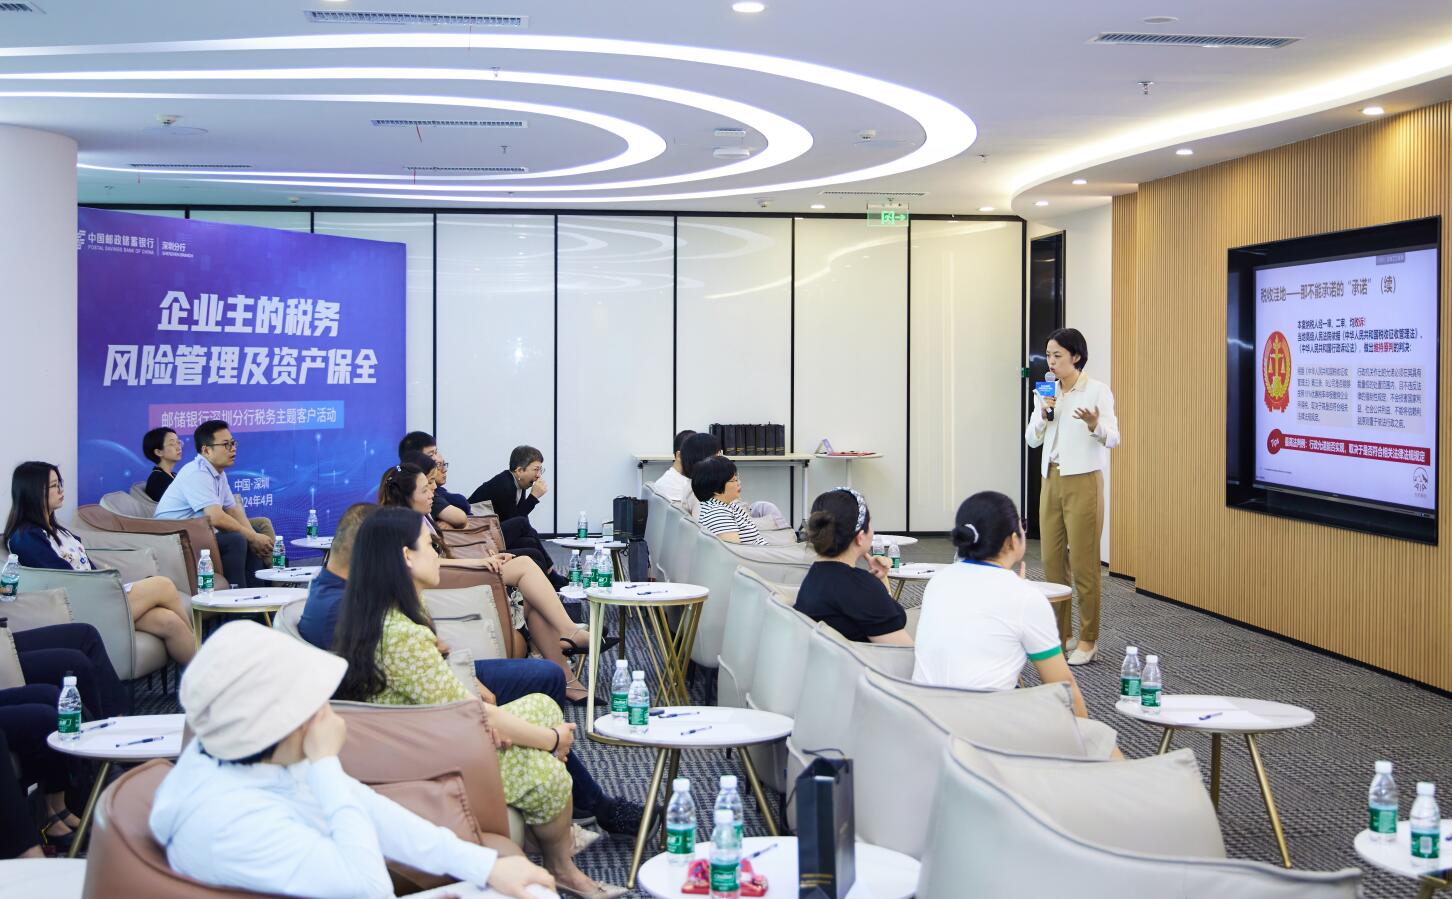 邮储银行深圳分行举办“企业主的税务风险管理与资产保全”专题讲座